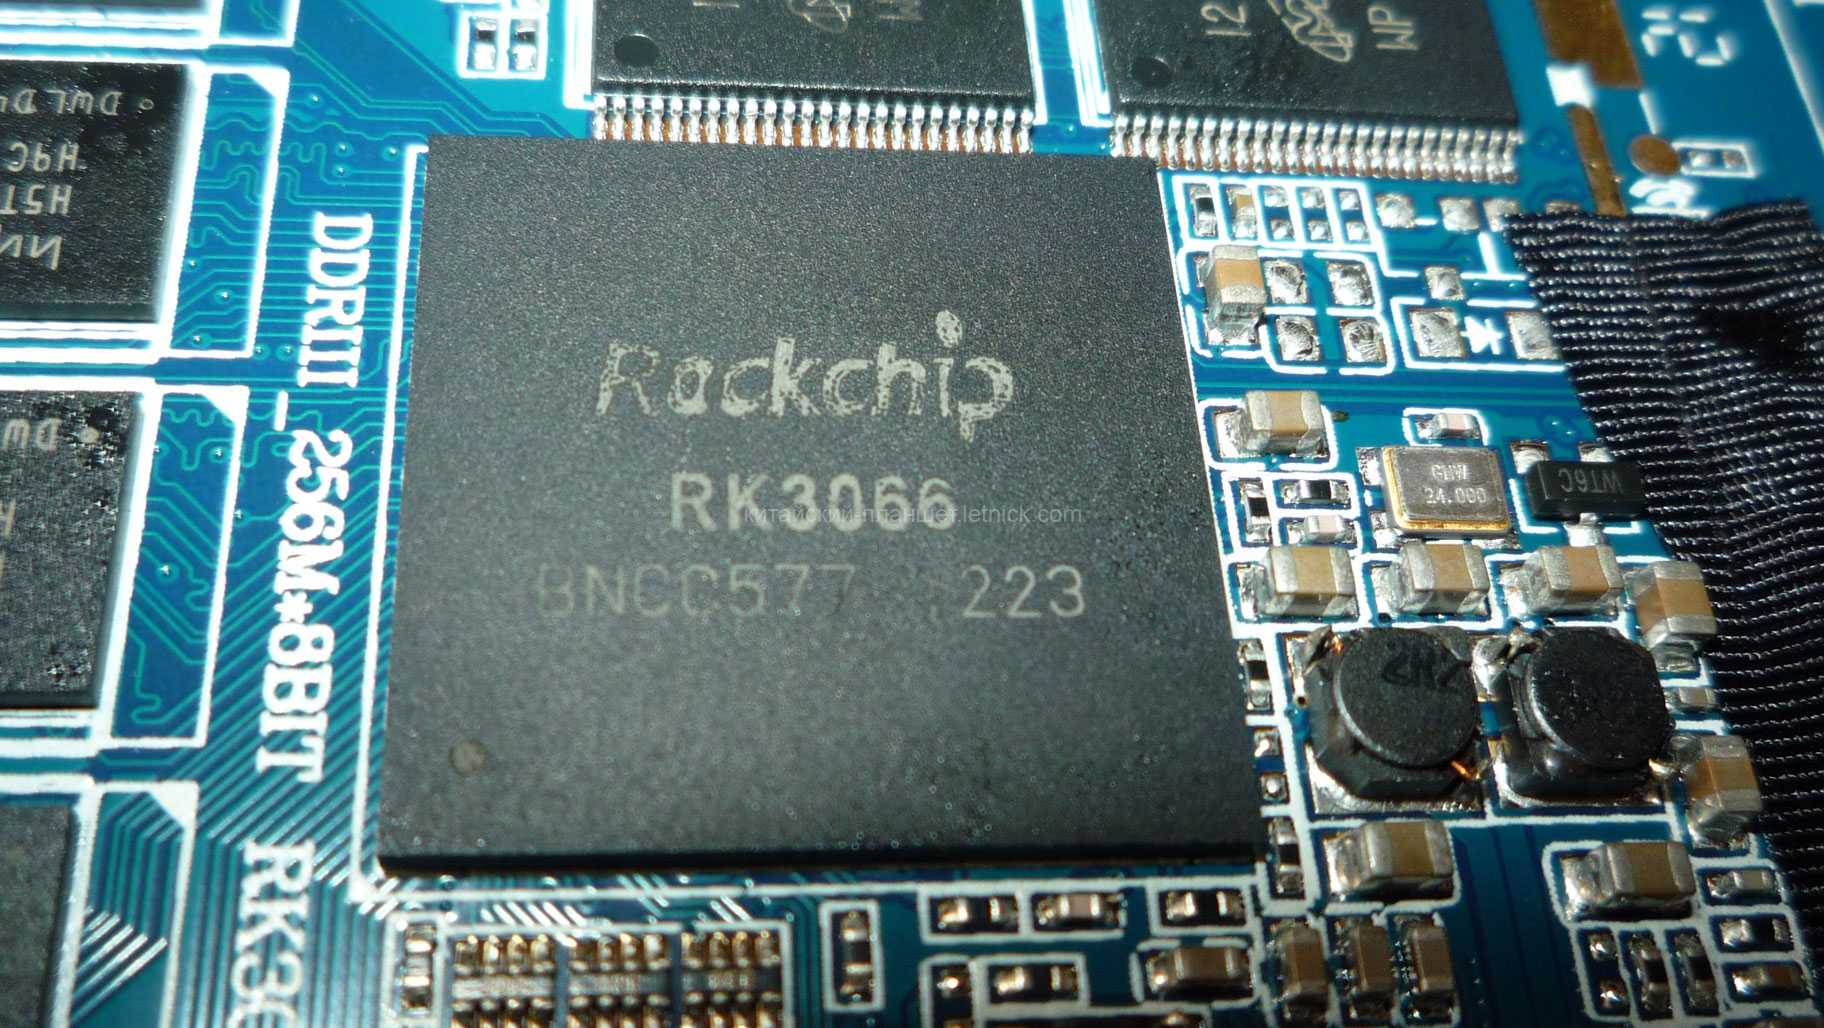 Вот так выглядит однокристальная система Rockchip RK3066